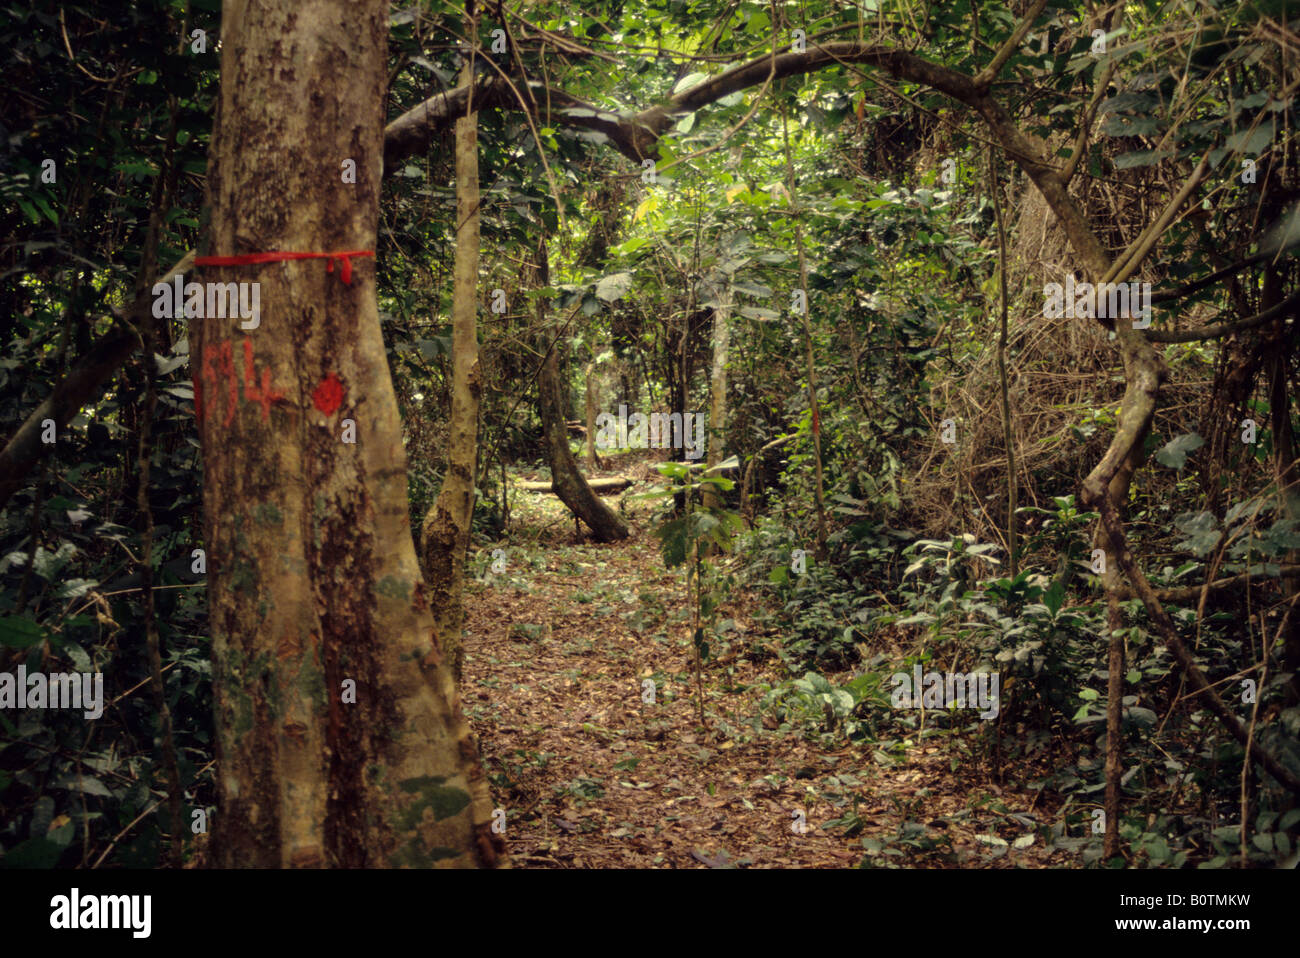 Bossematie foresta nazionale, centrale Costa d'Avorio, Costa d Avorio, Africa. Striscia di inventario che mostra marcature rosse che identificano il legno Foto Stock